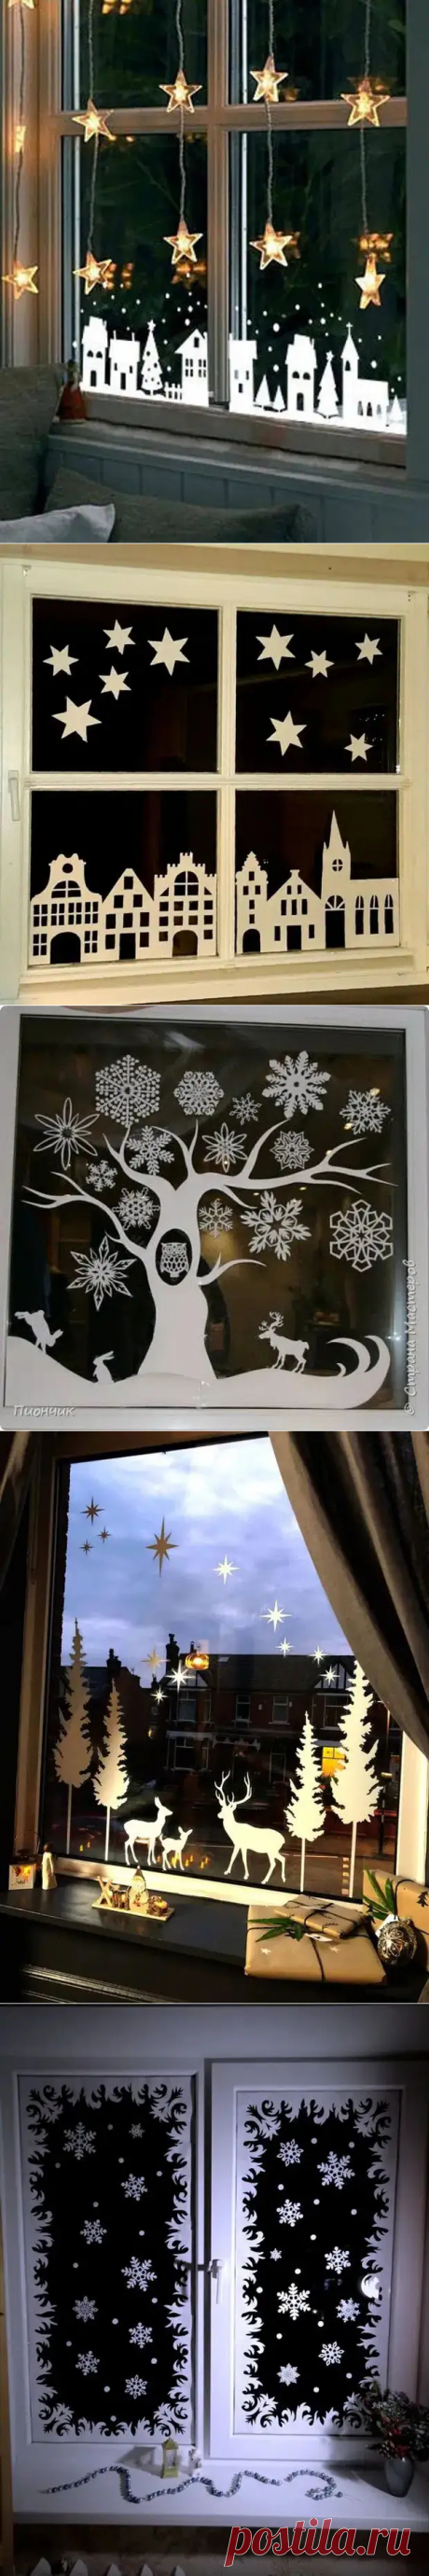 Красота: как украсить окна зимой при помощи бумаги и ножниц - Сделай сам - 29 декабря - 43913418802 - Медиаплатформа МирТесен